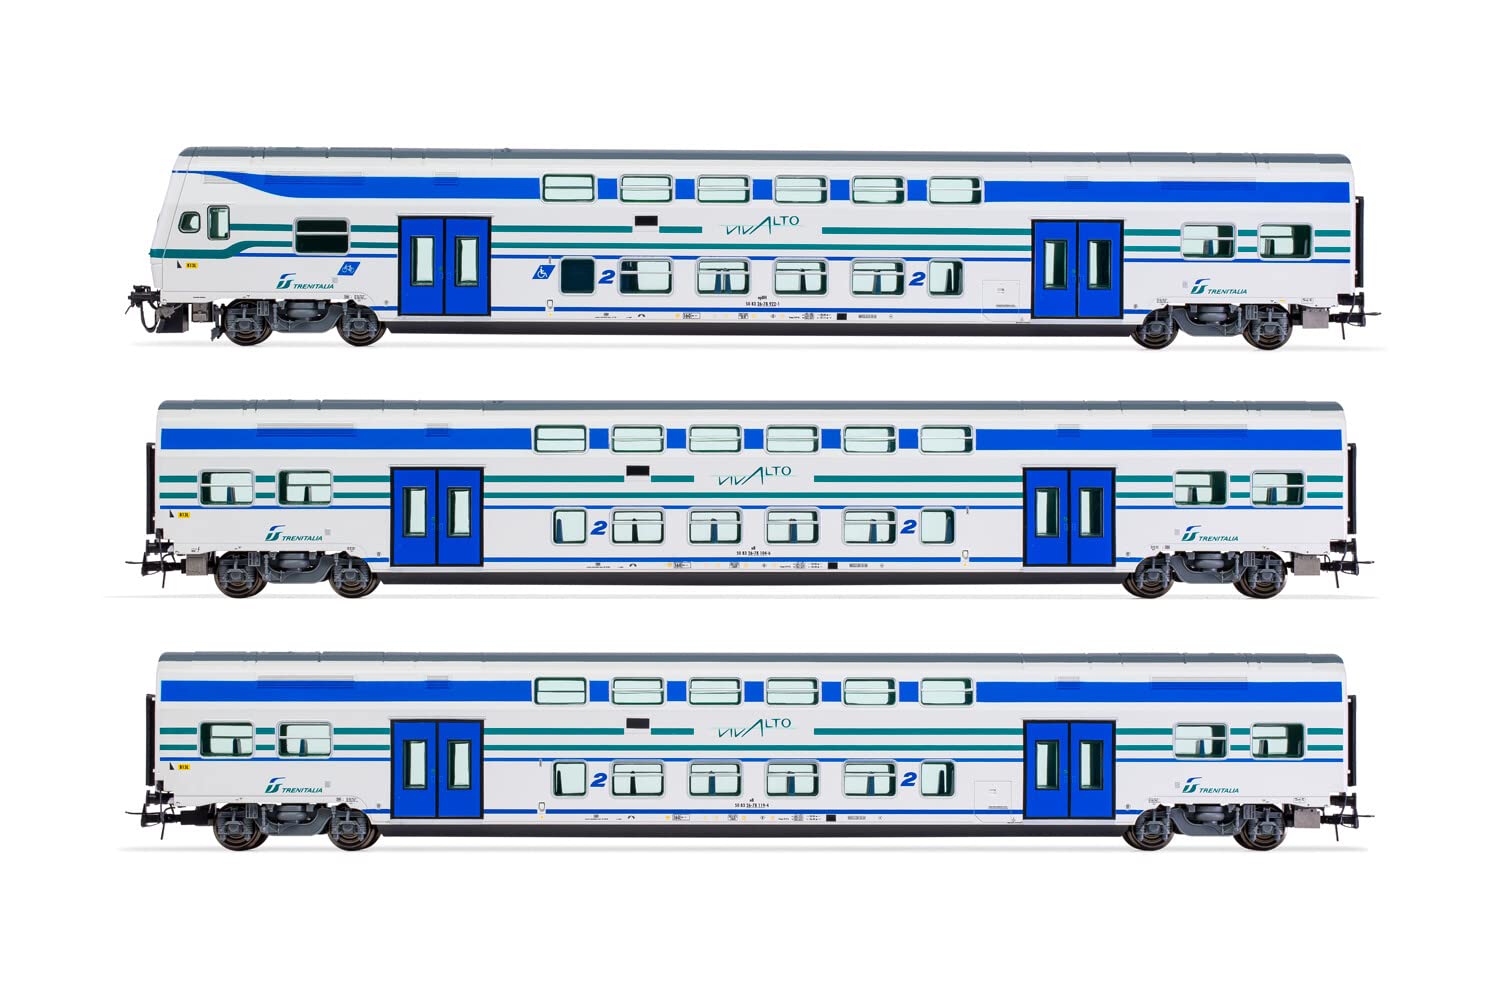 FS Trenitalia Vivalto-Passagierwagen, 3 Stück, 1 x Steuerwagen mit Führerstand, 2 x Zwischenwagen, in Vivalto-Lackierung